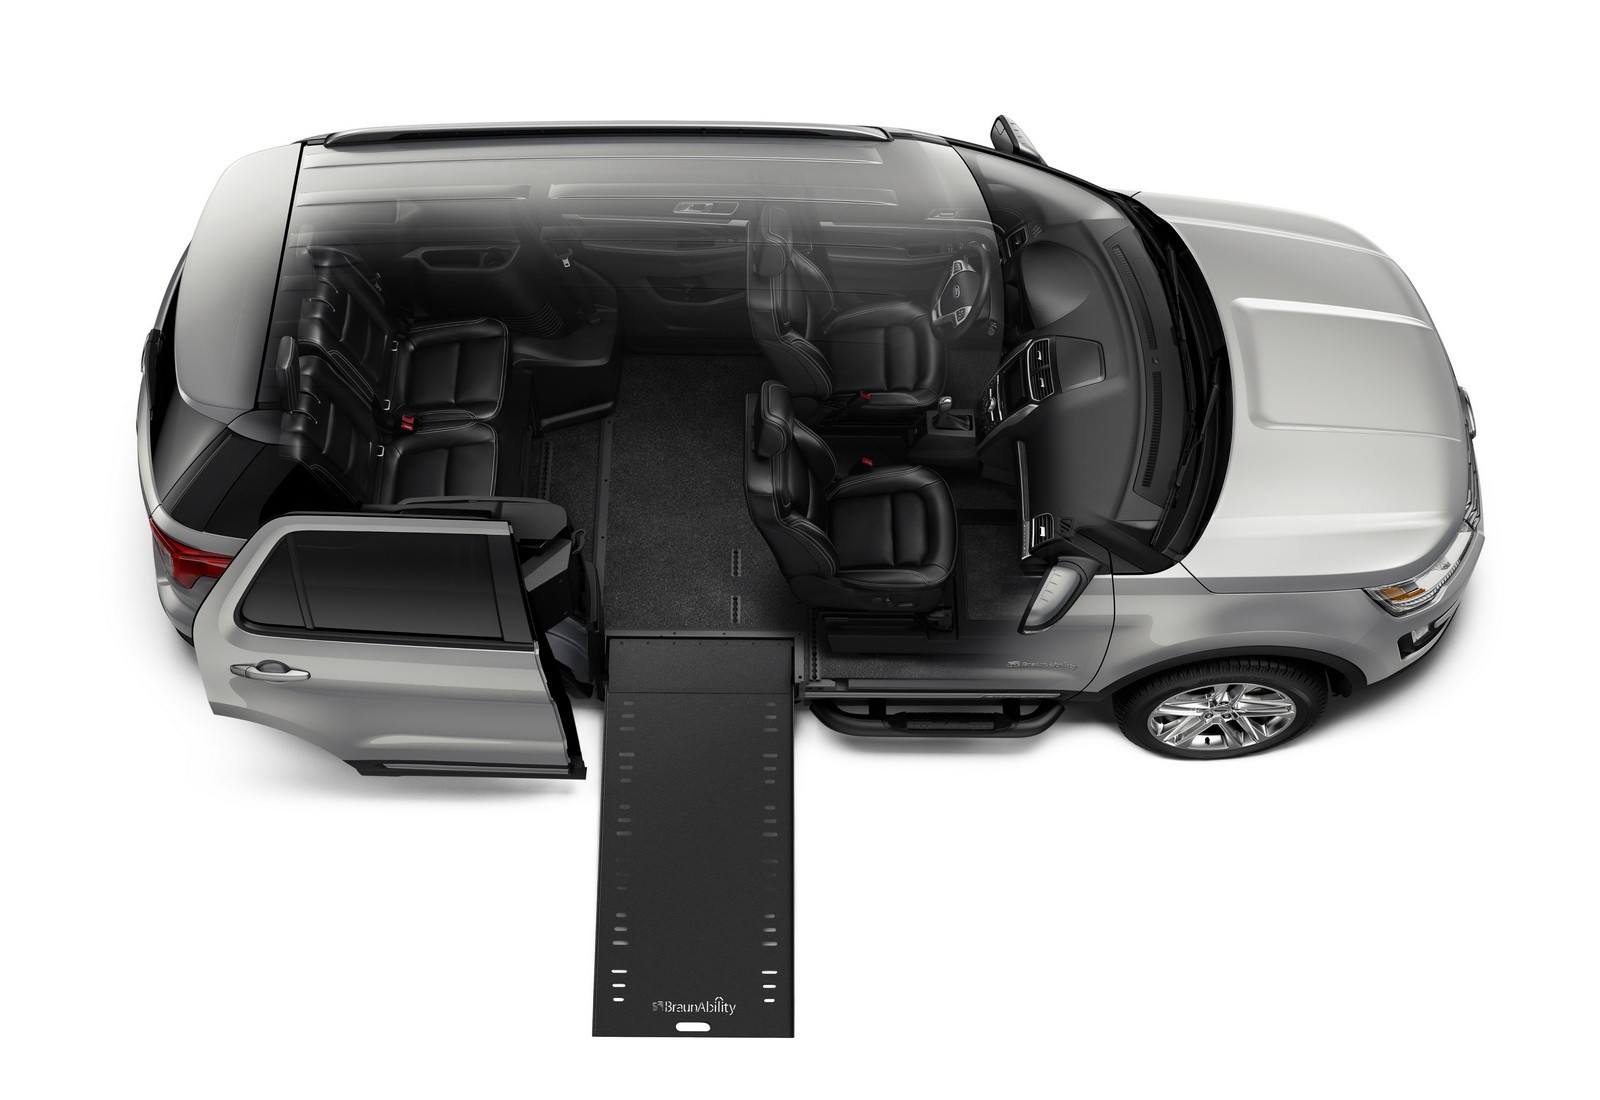 "فورد" تطلق سيارتها اكسبلورر 2016 الخاصة بذوي الاحتياجات الخاصة "صور ومواصفات" Ford 3